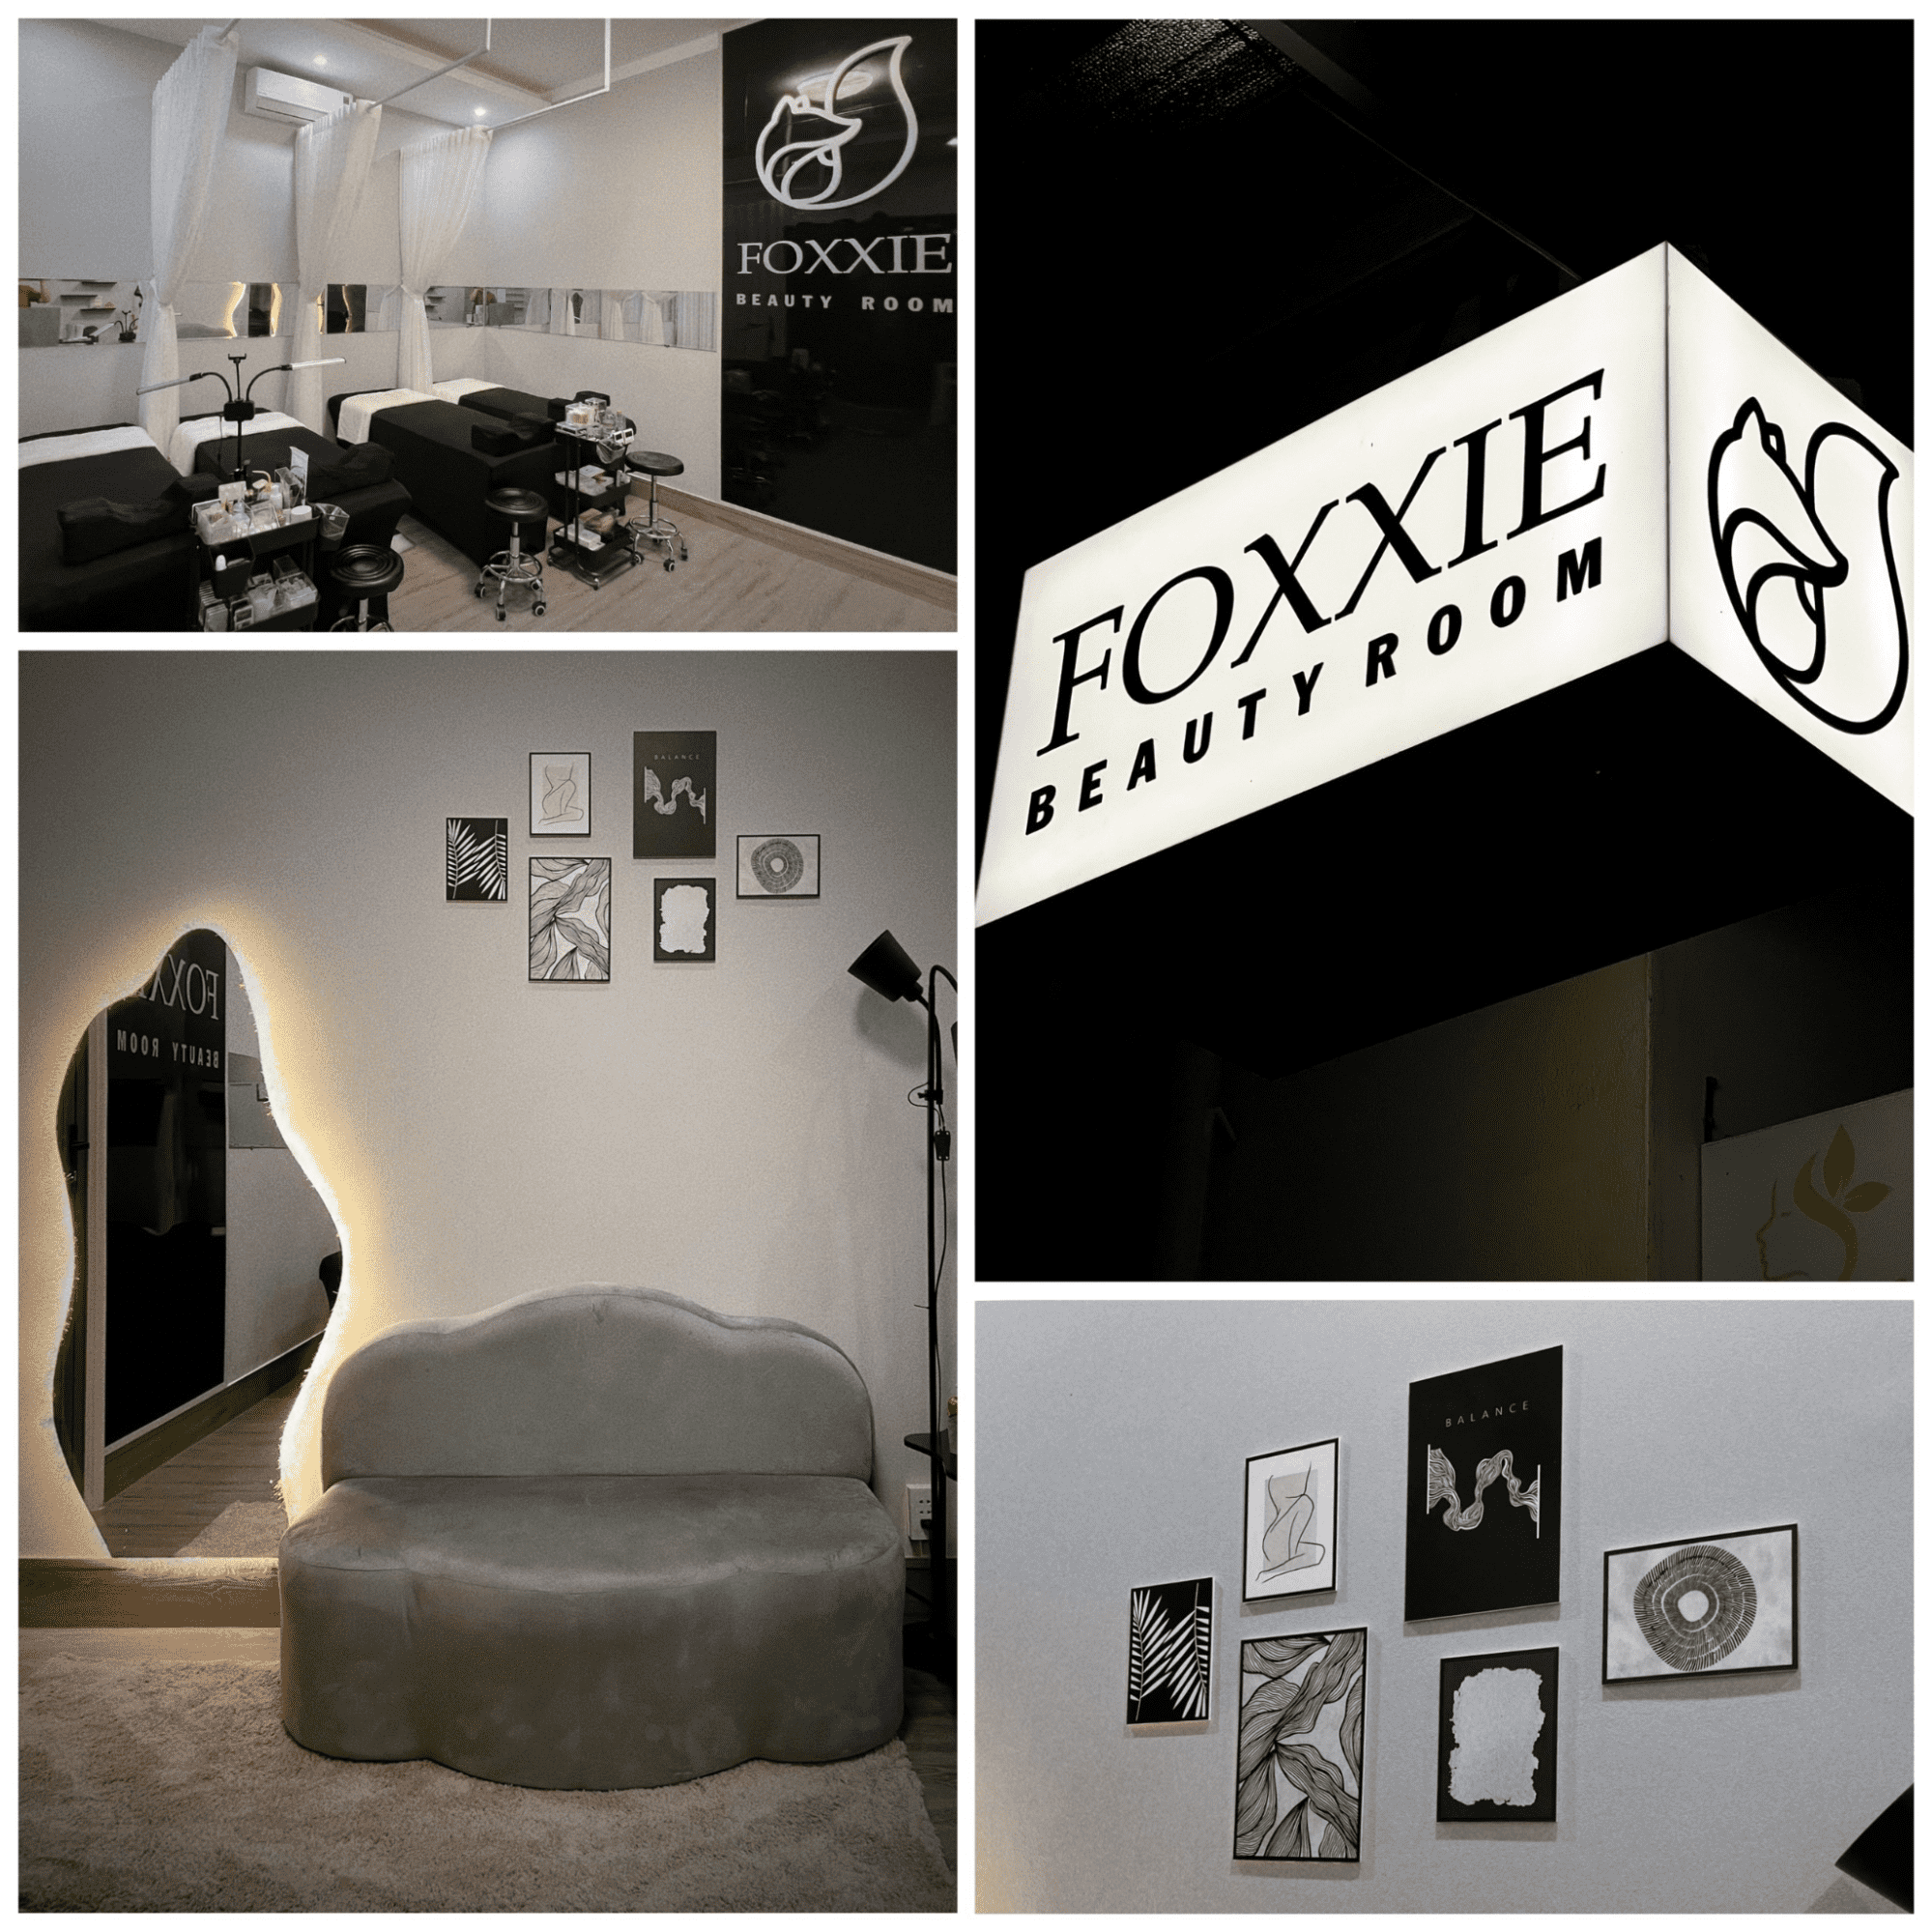 Foxxie Beauty Room